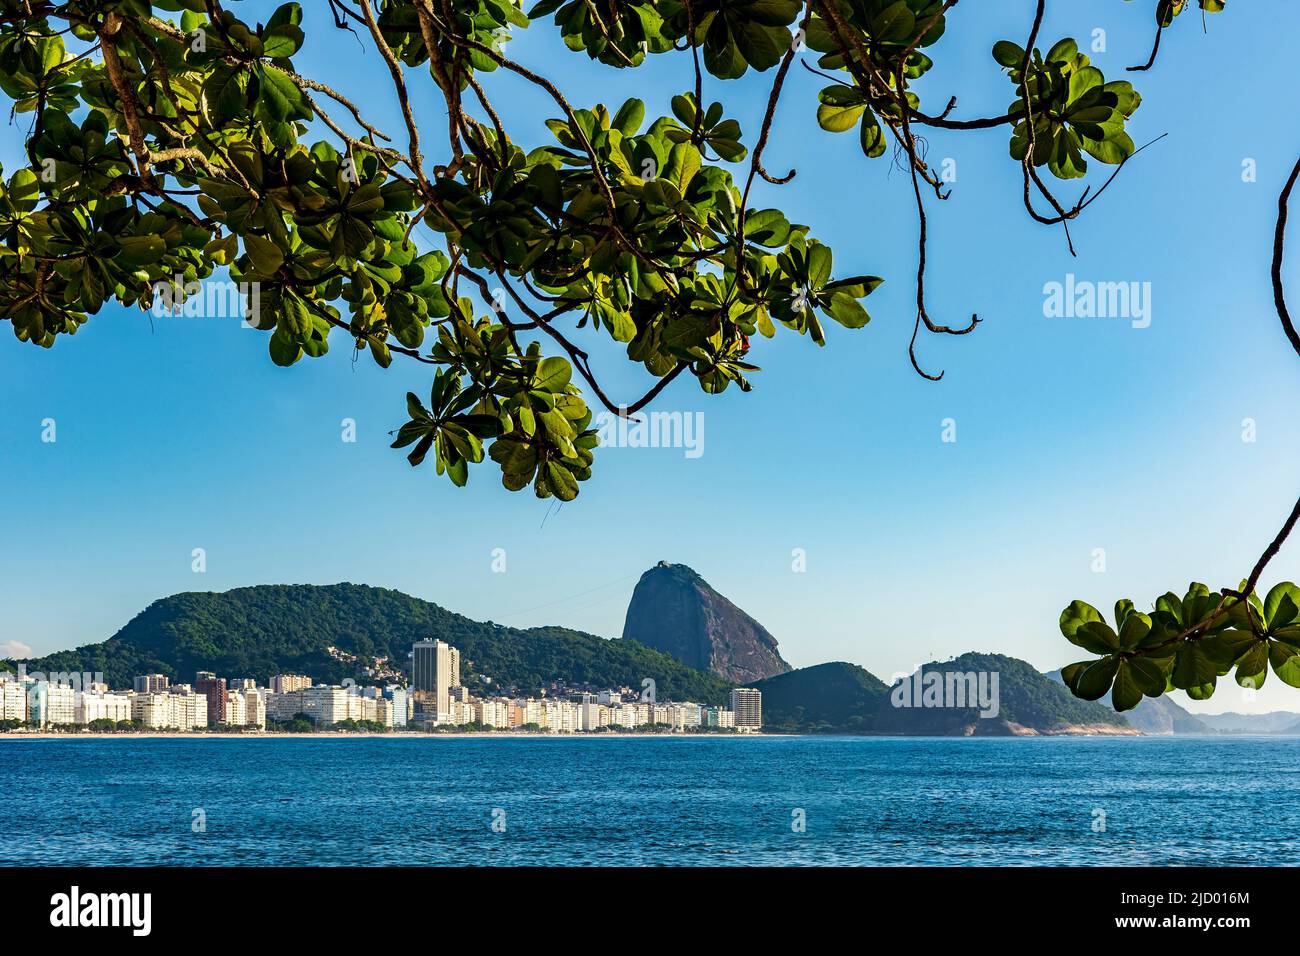 Vue sur la plage de Copacabana et le mont Sugarloaf à Rio de Janeiro à travers la végétation Banque D'Images